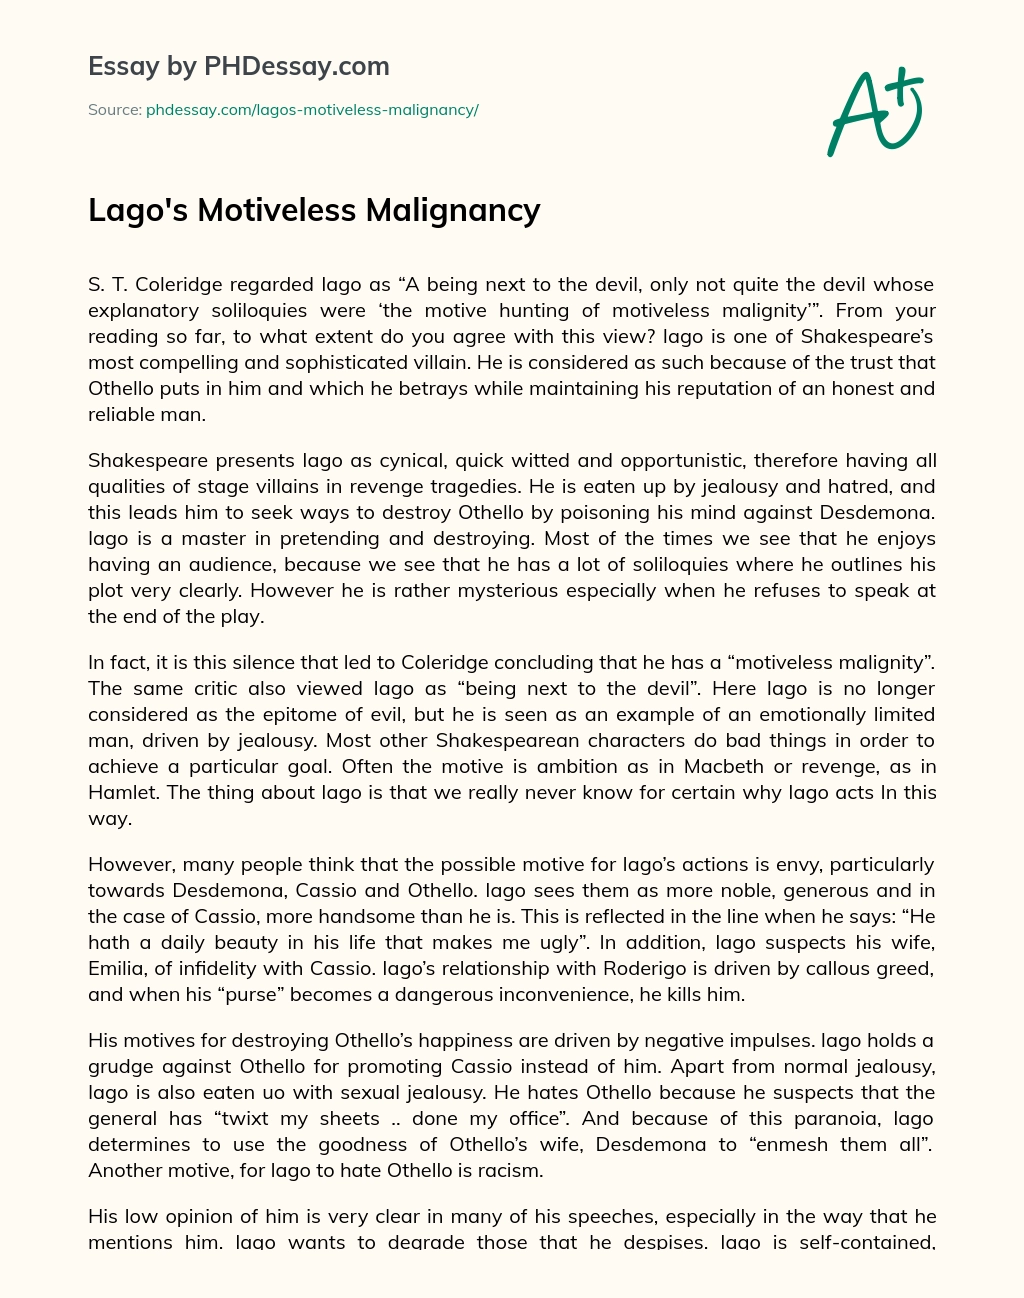 Lago’s Motiveless Malignancy essay